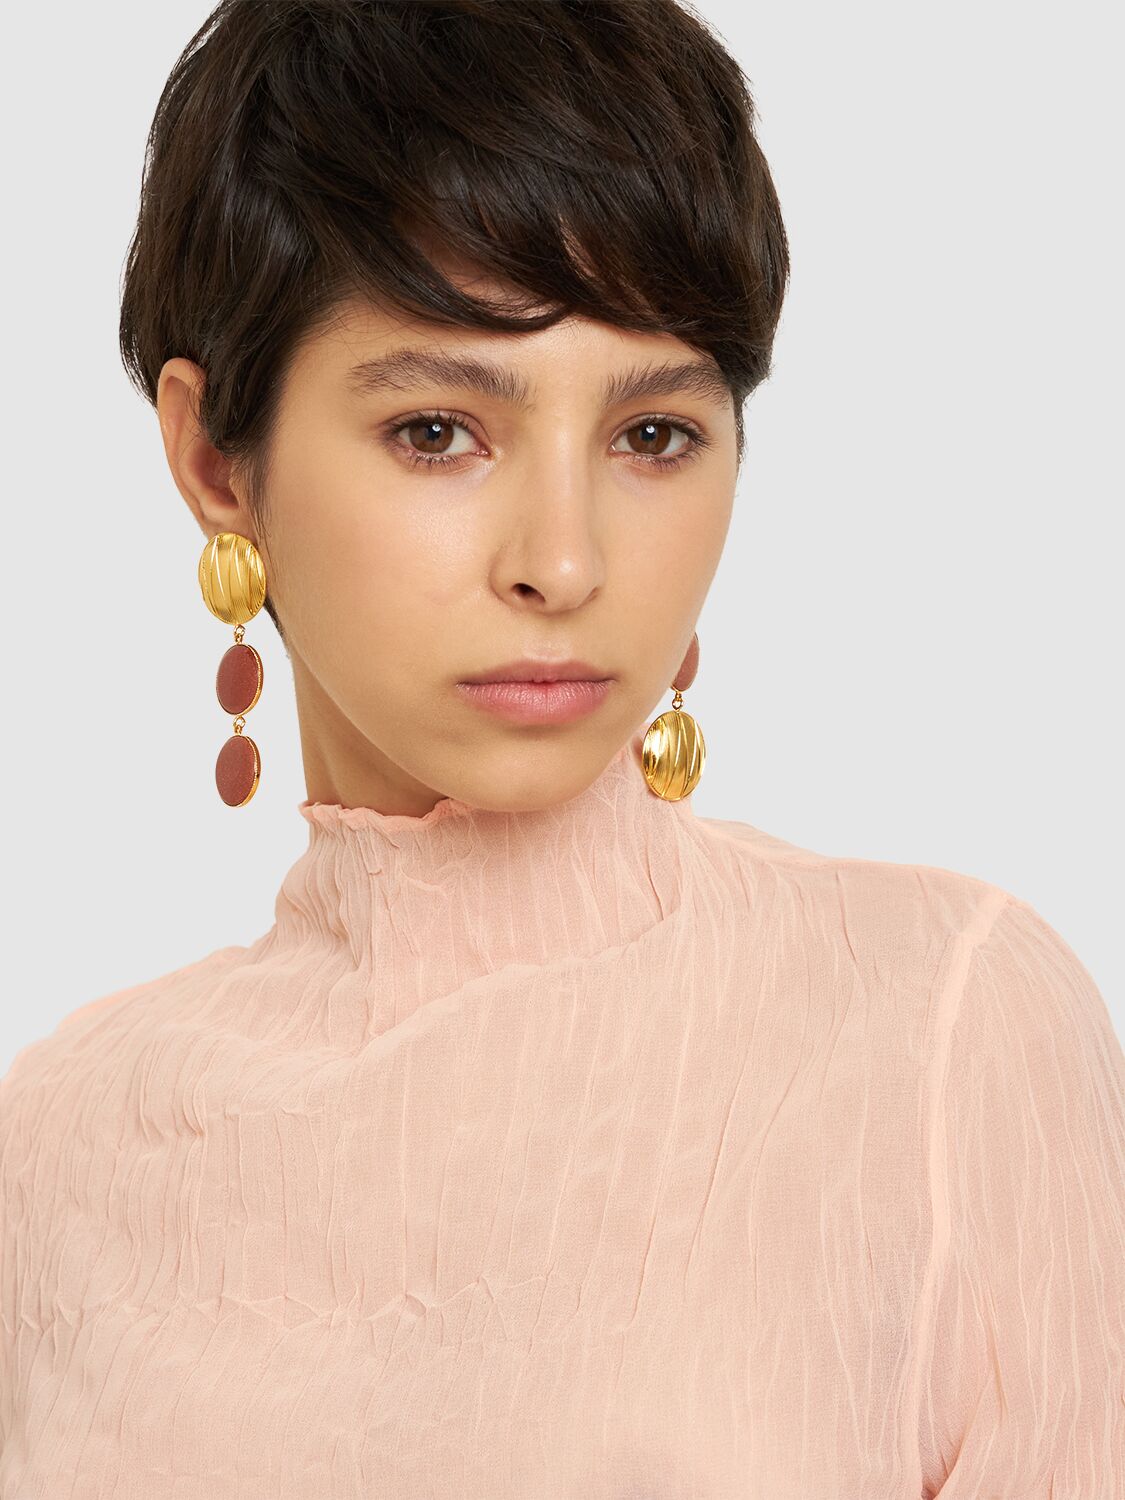 Shop D'estree Sonia Geometric Double Stone Earrings In Gold,brown